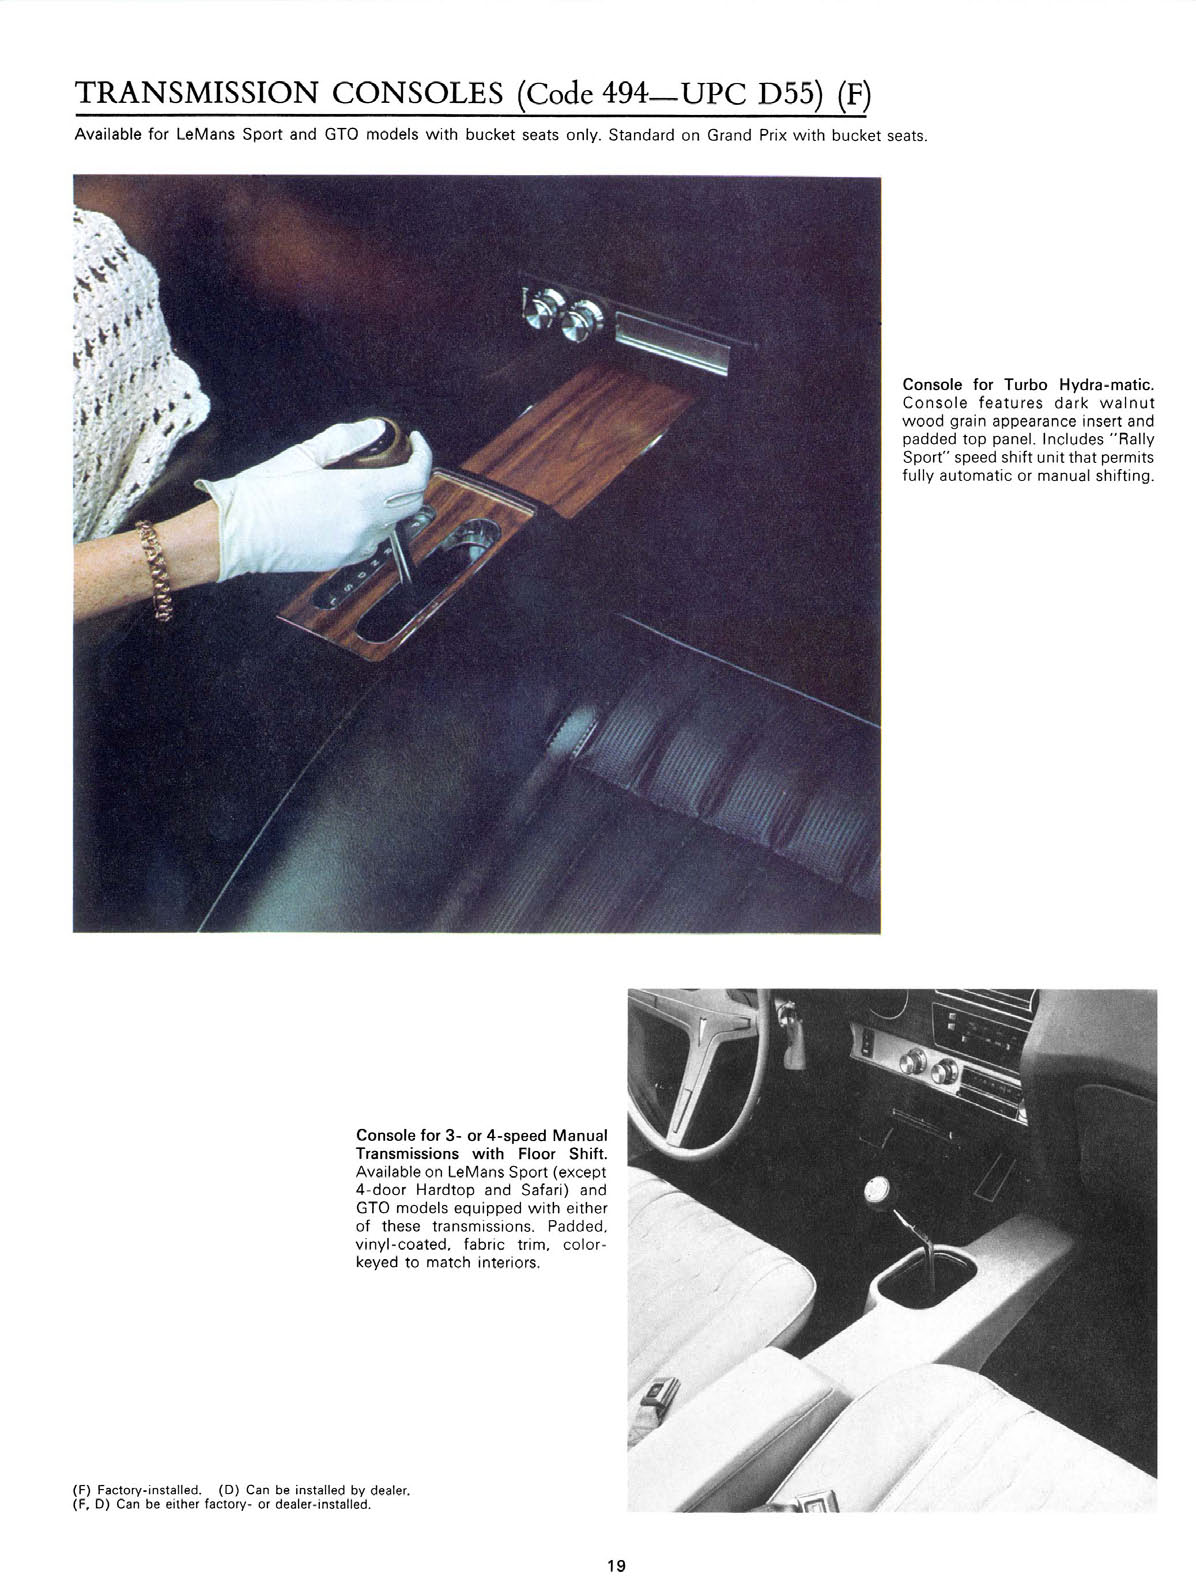 n_1970 Pontiac Accessories-19.jpg